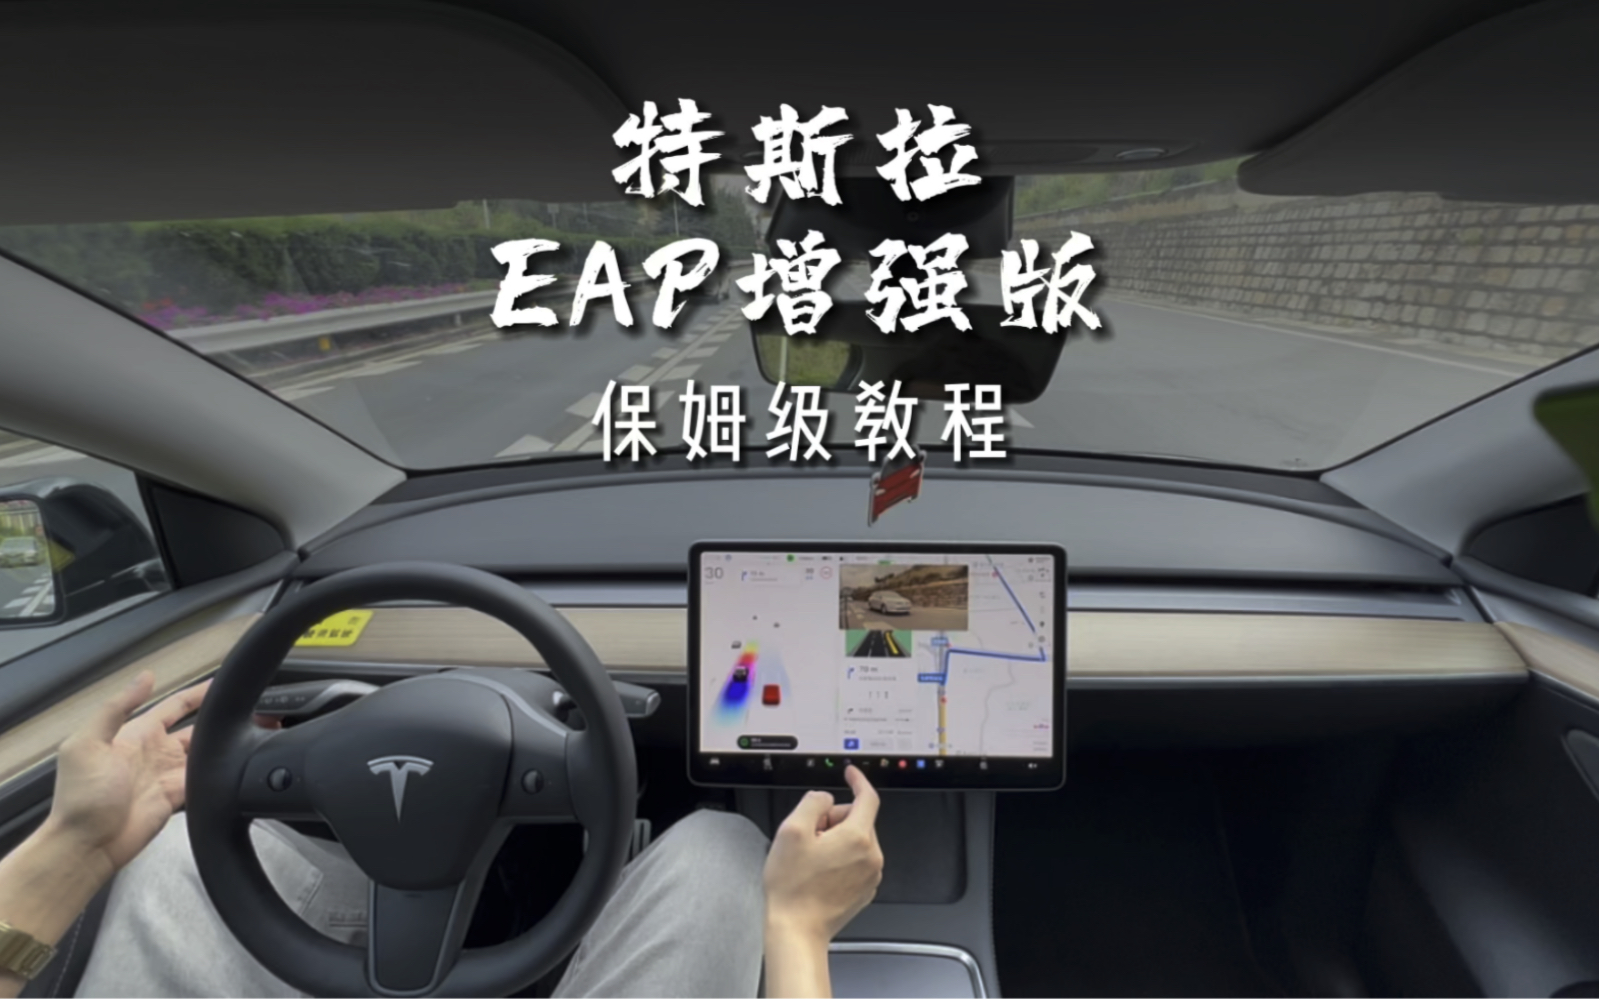 特斯拉的EAP增强版辅助驾驶你真的会用吗？自动泊车、召唤、自动下闸道，自动变道，自动辅助导航完整版教程来咯，视频有点长一定要耐心看完。